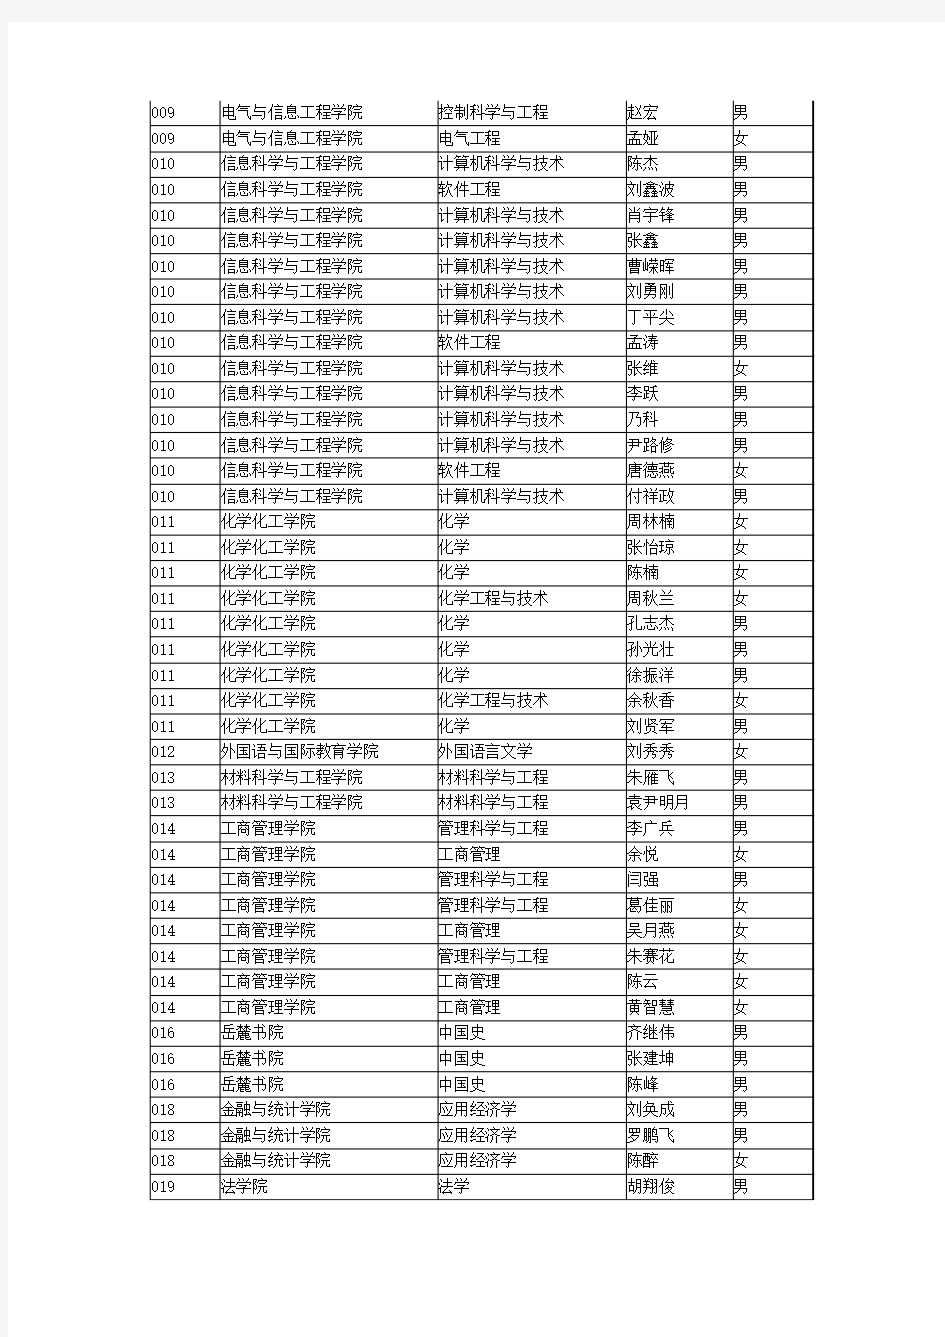 2015年湖南大学“申请-审核制”博士研究生拟录取名单公示